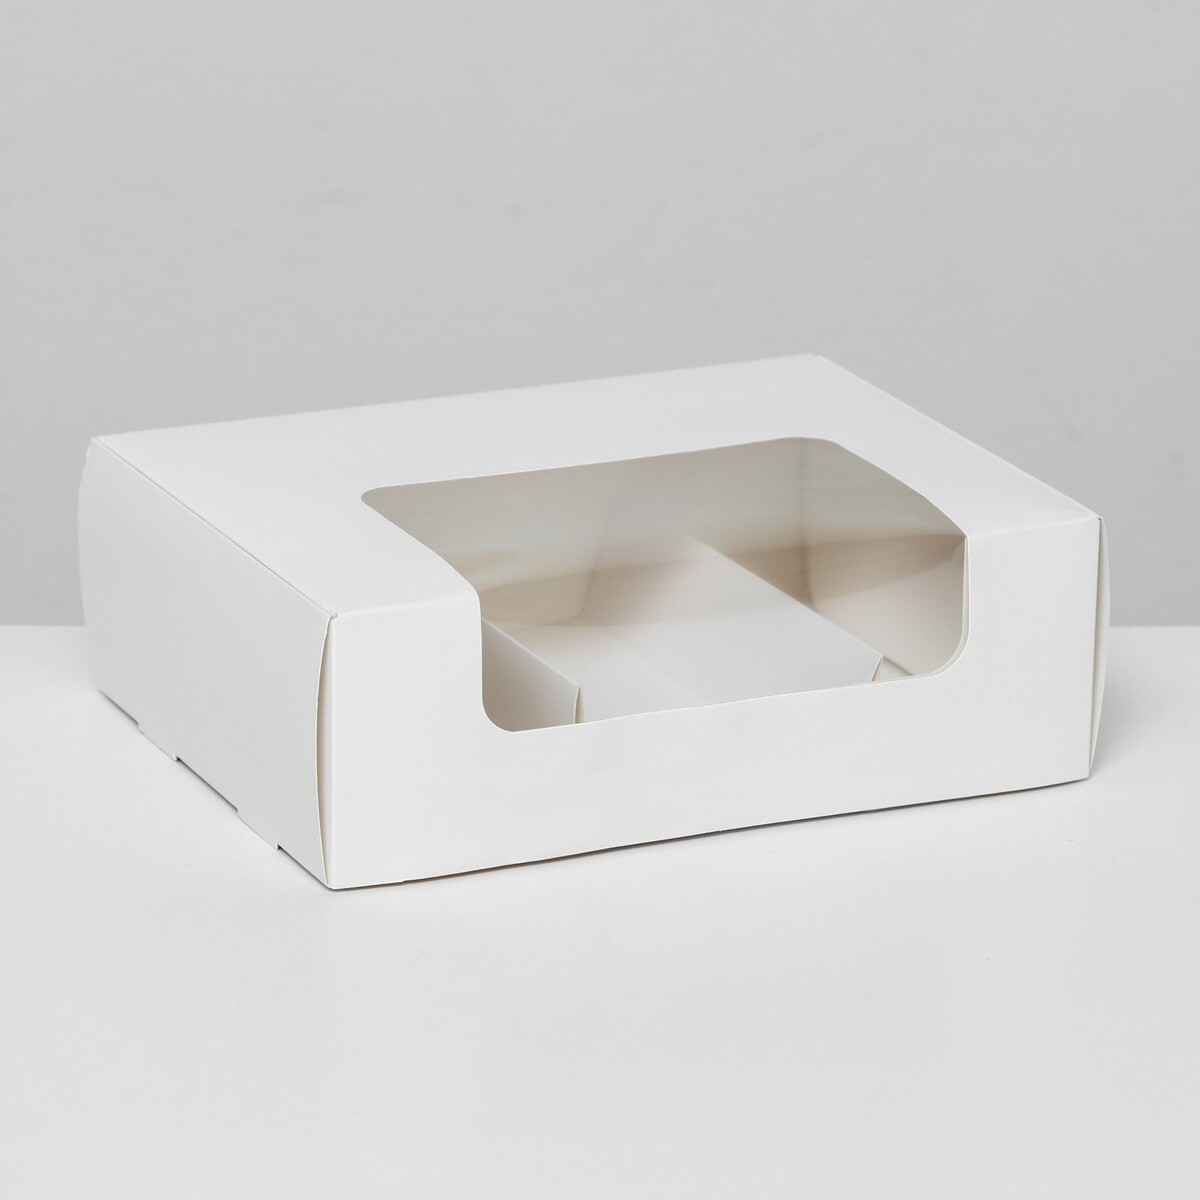 Коробка складная, под 3 эклера, белая, 20 x 15 x 6 см коробка складная под 2 конфеты белая 5 х 10 5 х 3 5 см